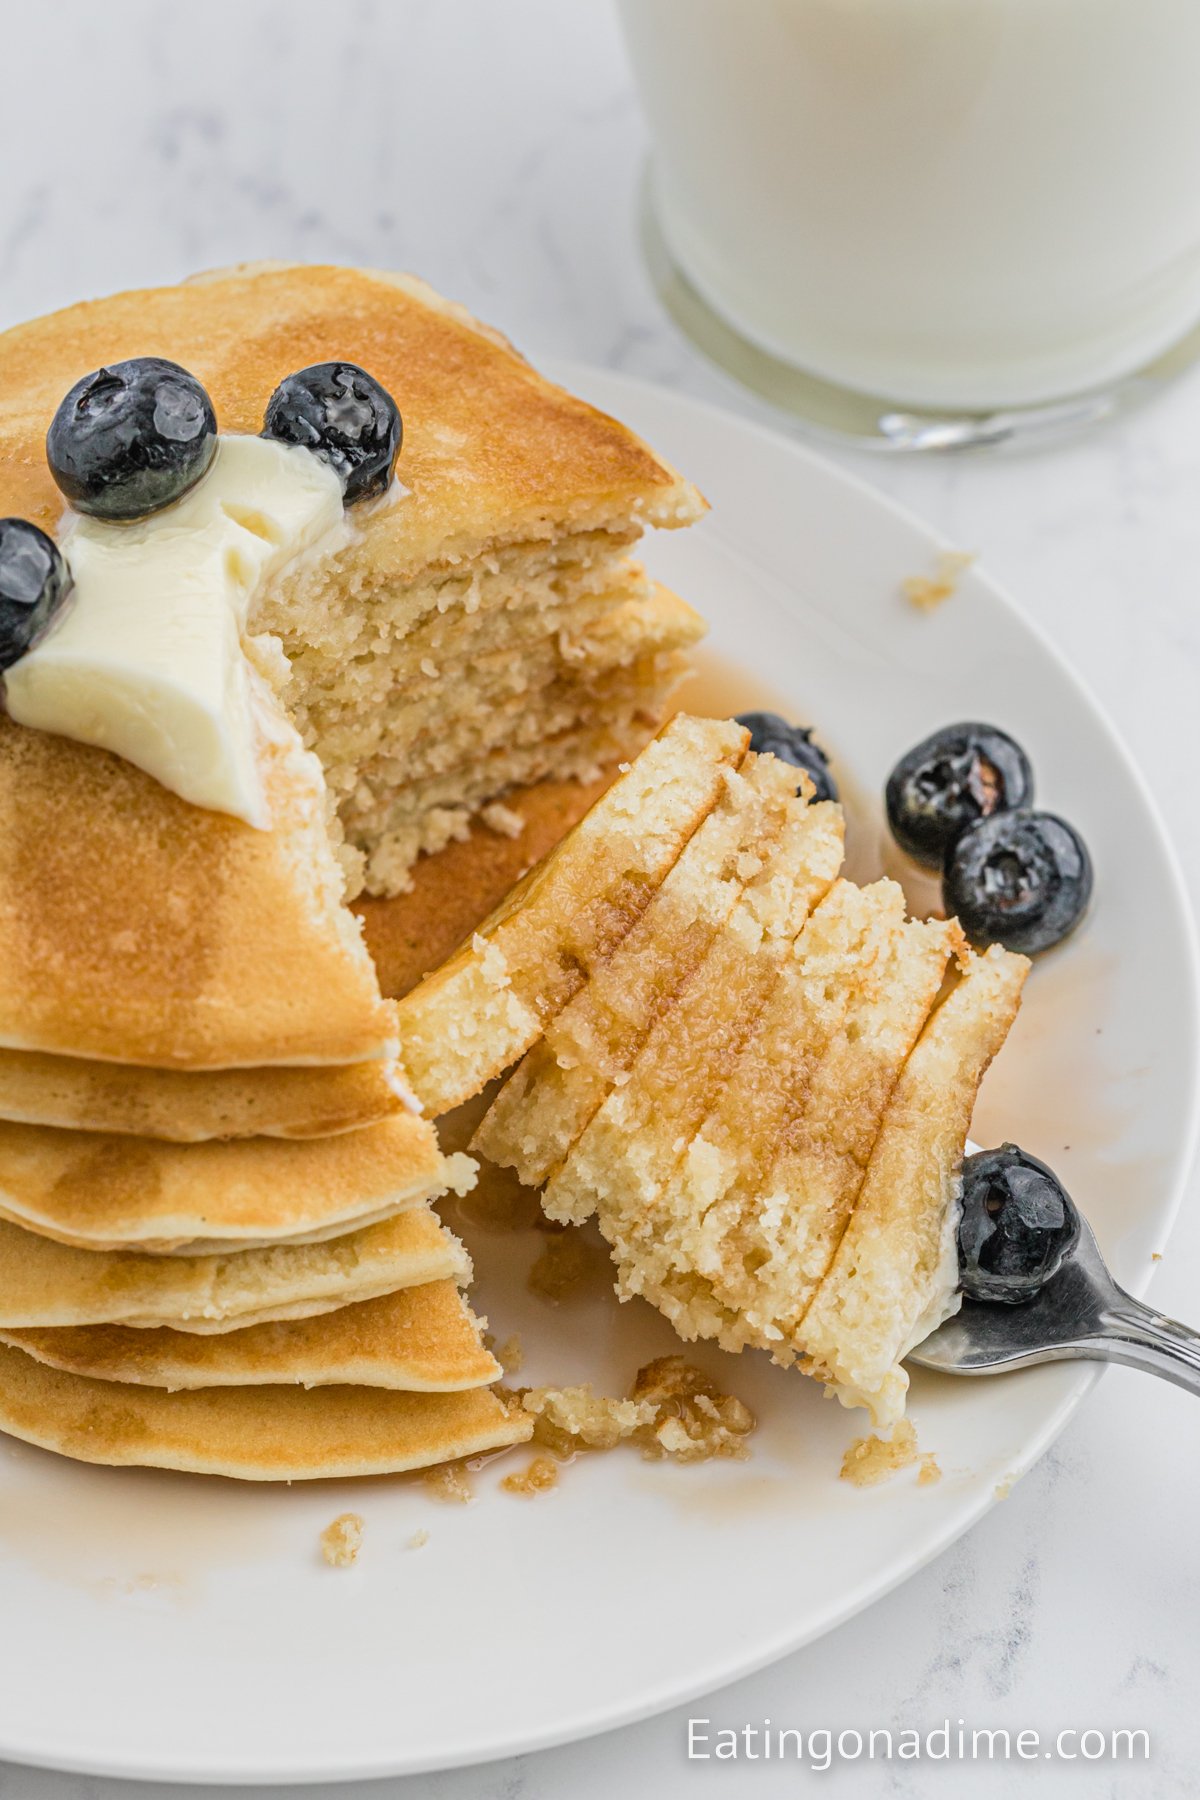 https://www.eatingonadime.com/wp-content/uploads/2022/08/1200x1800-Sweet-Cream-Pancakes-13.jpg